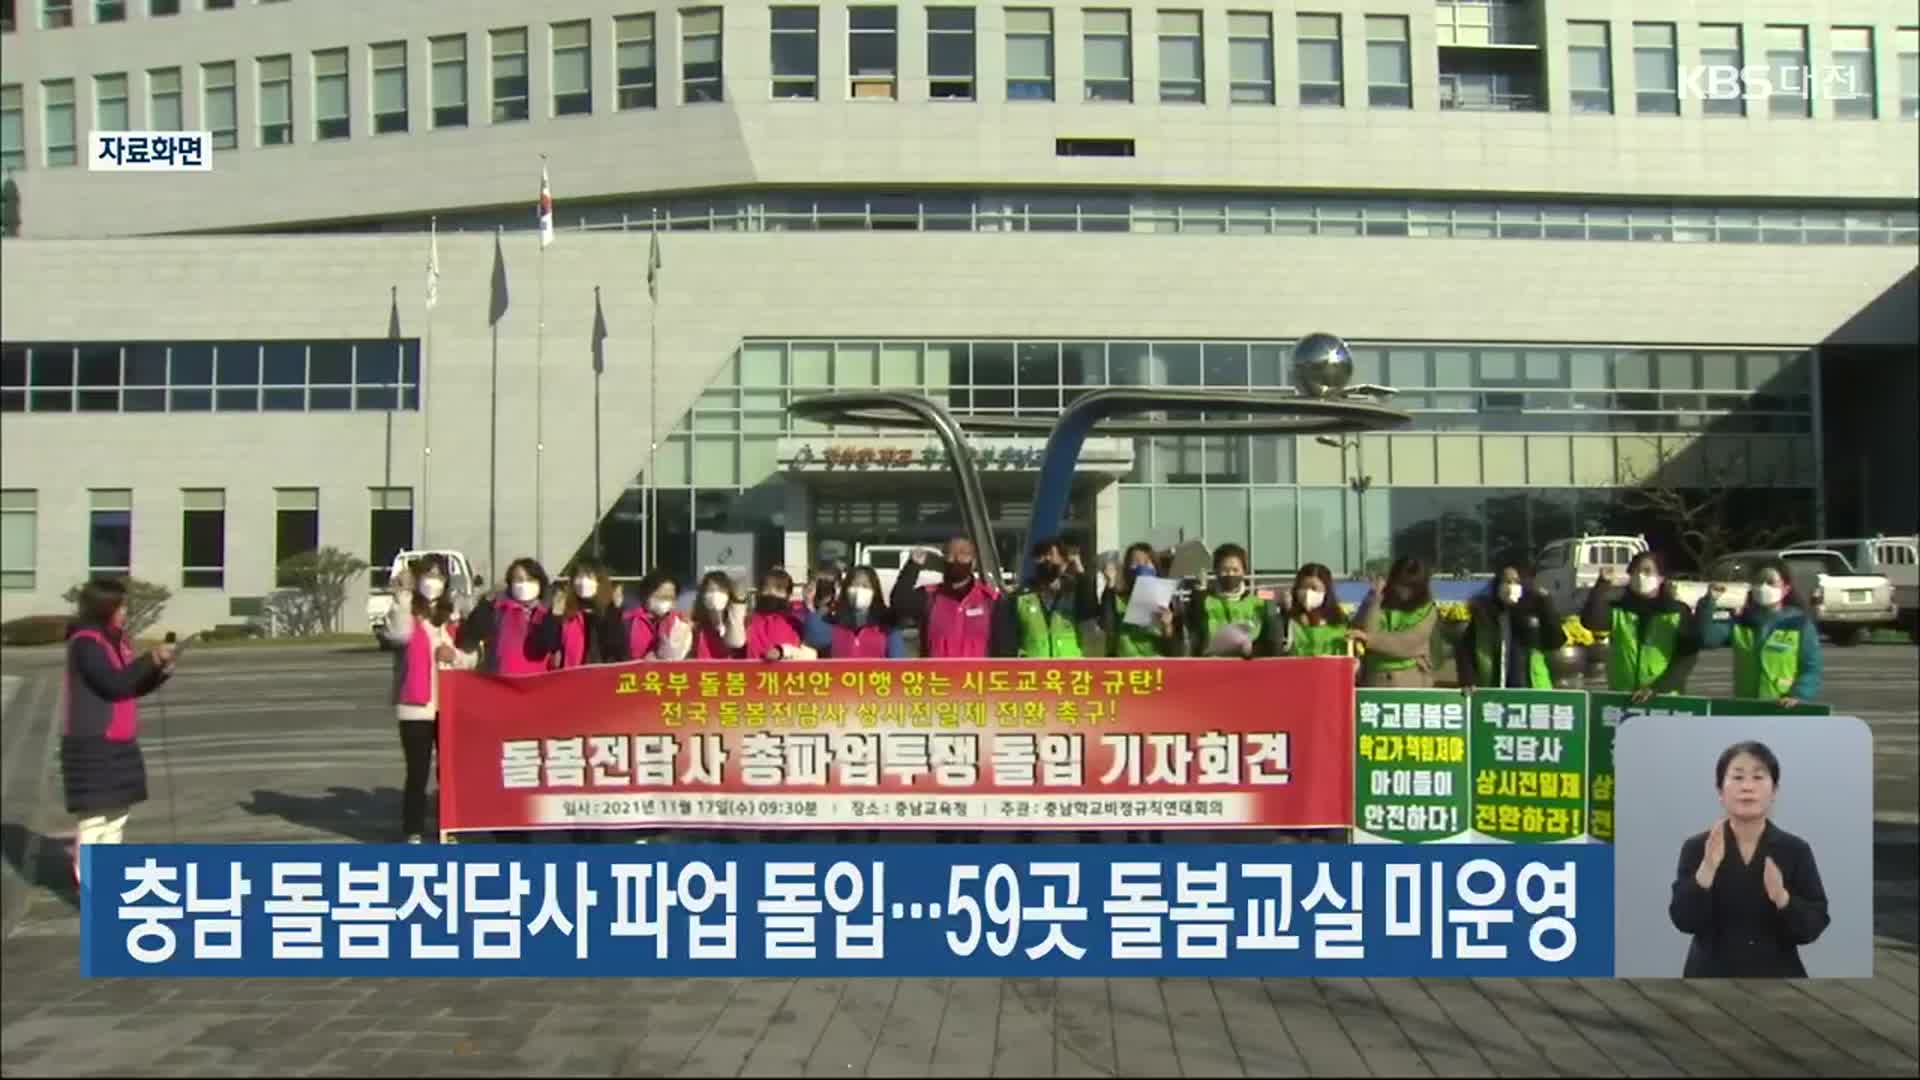 충남 돌봄전담사 파업 돌입…59곳 돌봄교실 미운영